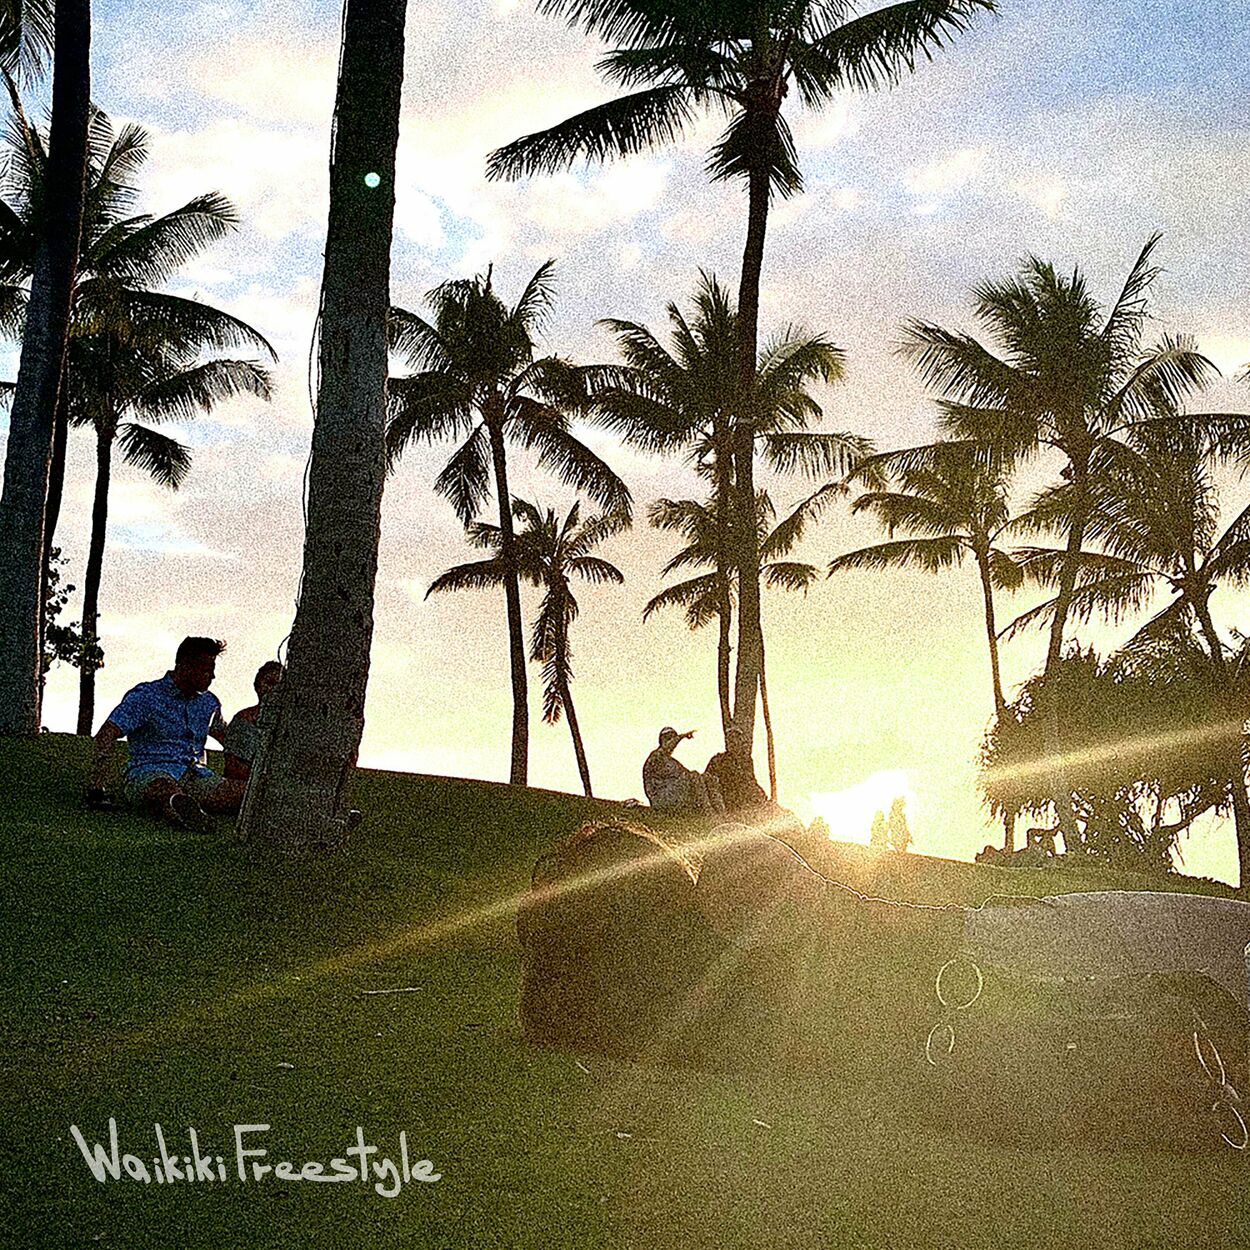 Bizzy – Waikiki freestyle – Single